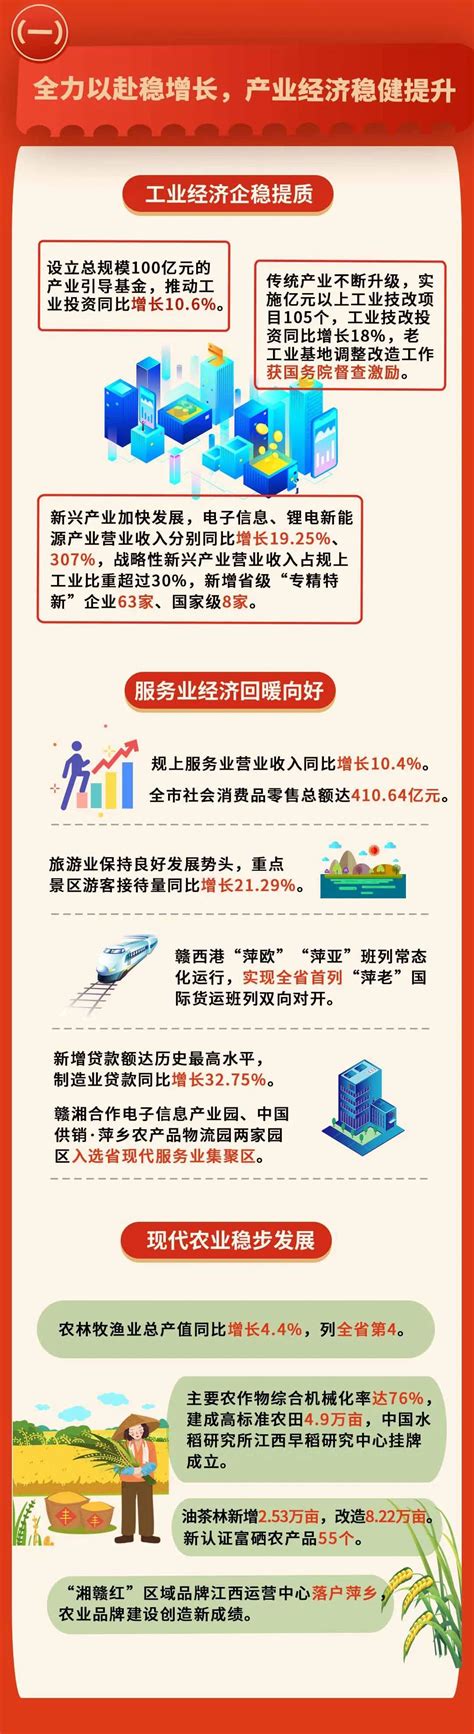 萍乡行业资讯-启优网络营销